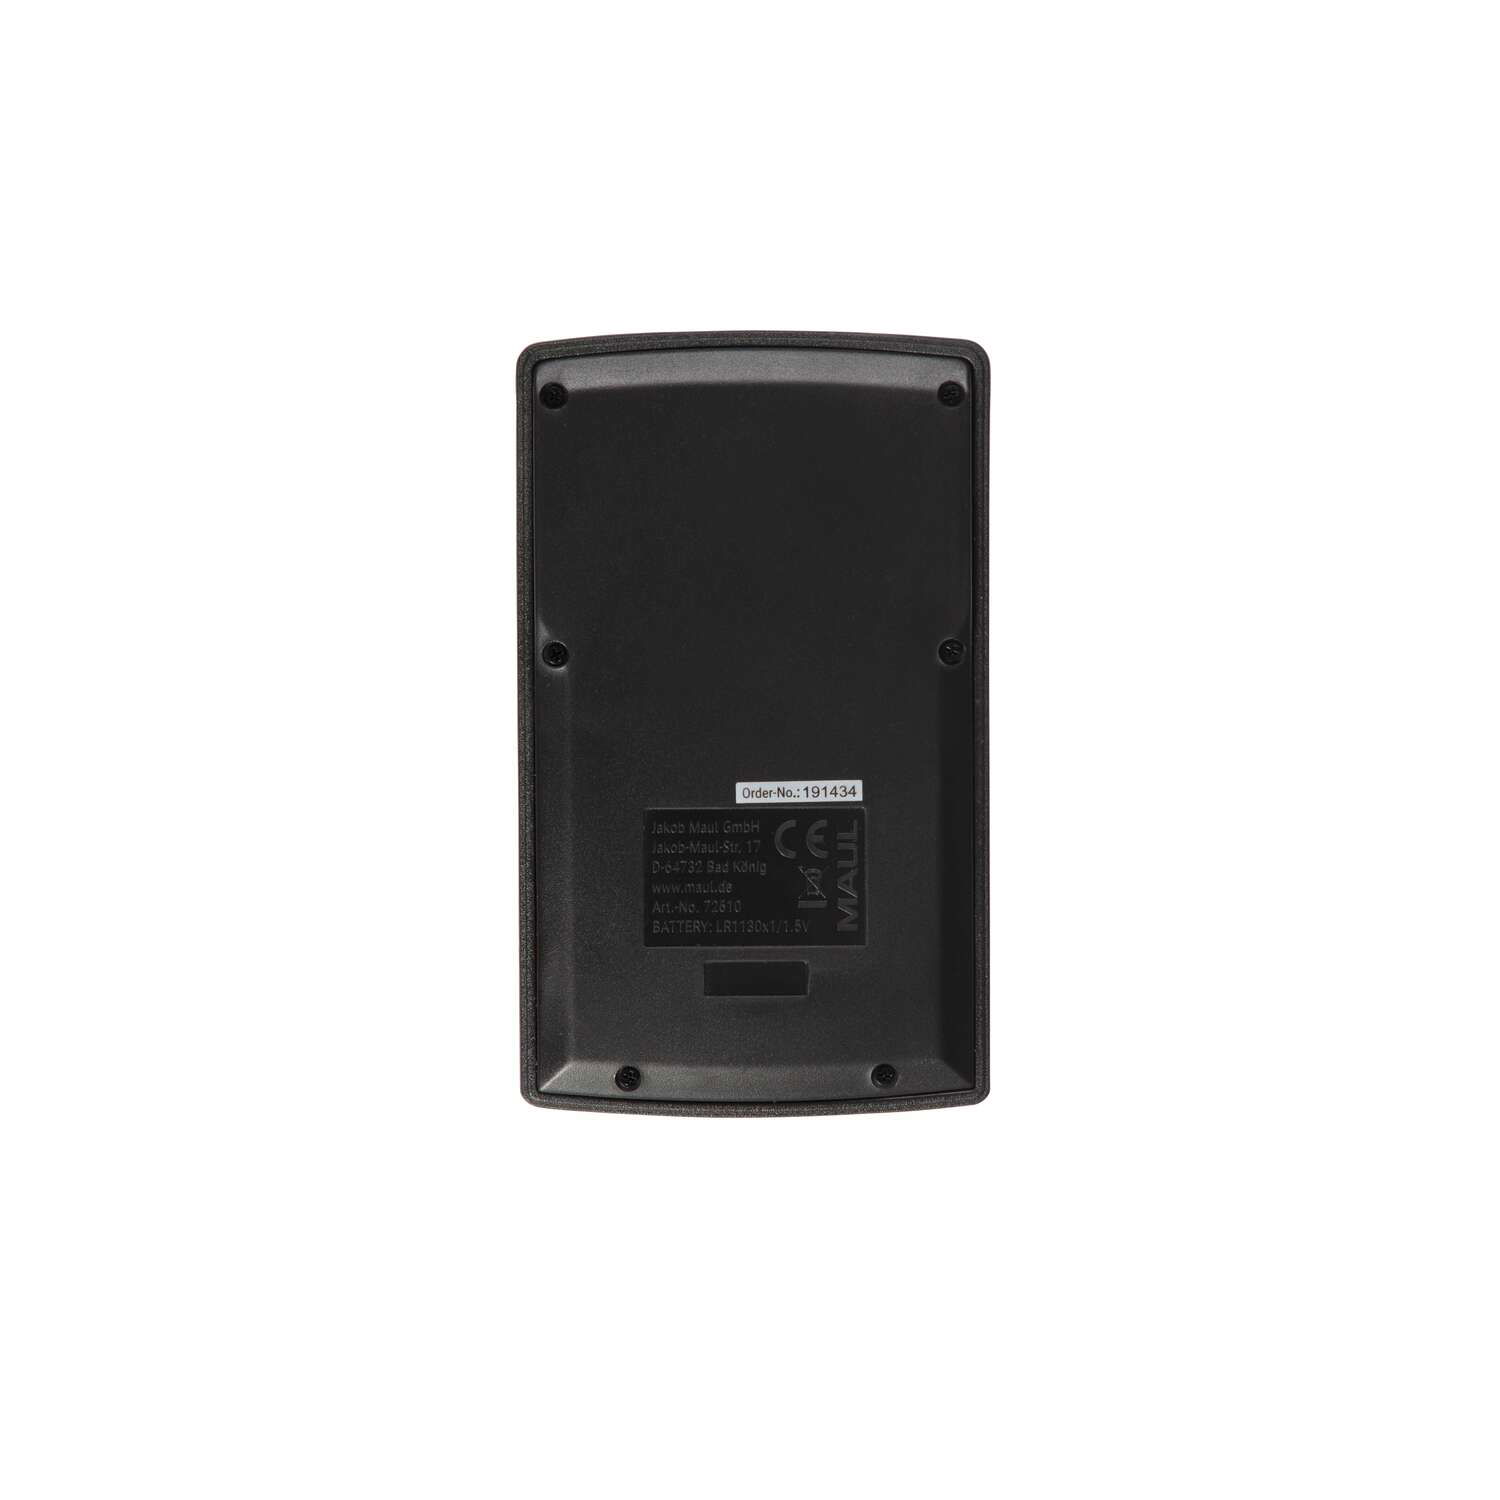 MAUL Taschenrechner M 8 Solar Batterie 1-zeilig, 8 Ziffern schwarz